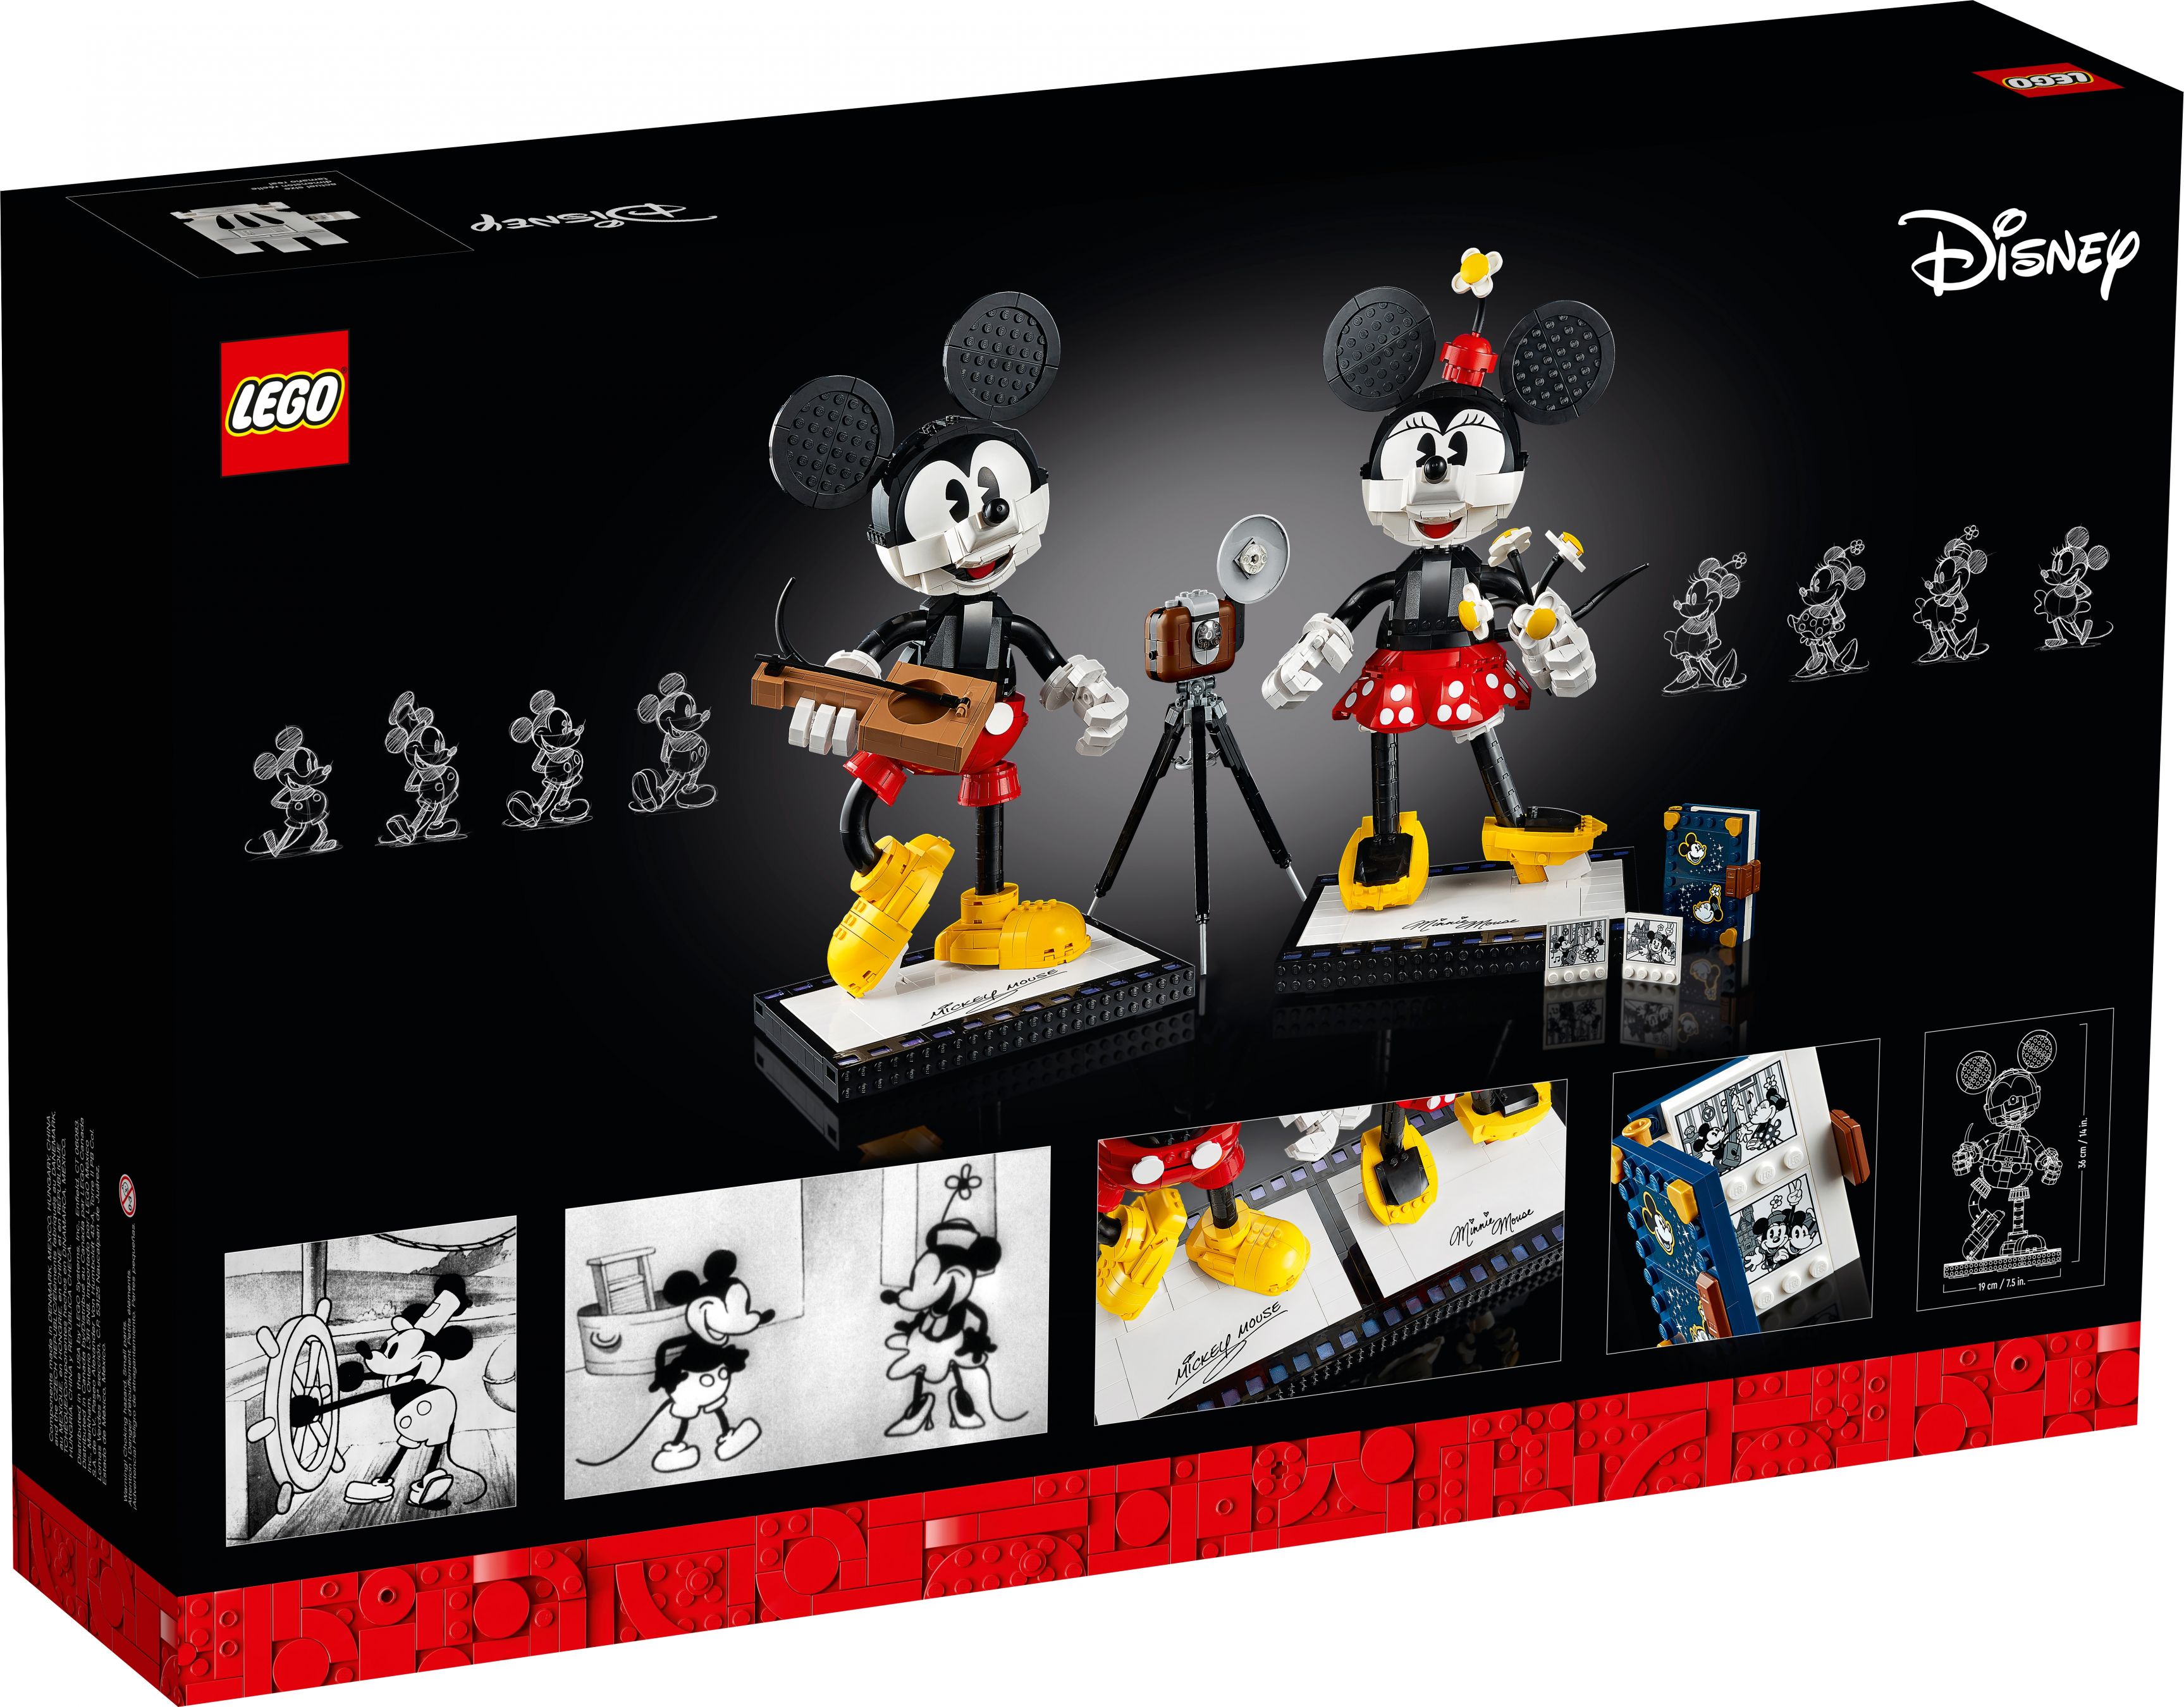 LEGO Disney 43179 Micky Maus und Minnie Maus LEGO_43179_alt12.jpg